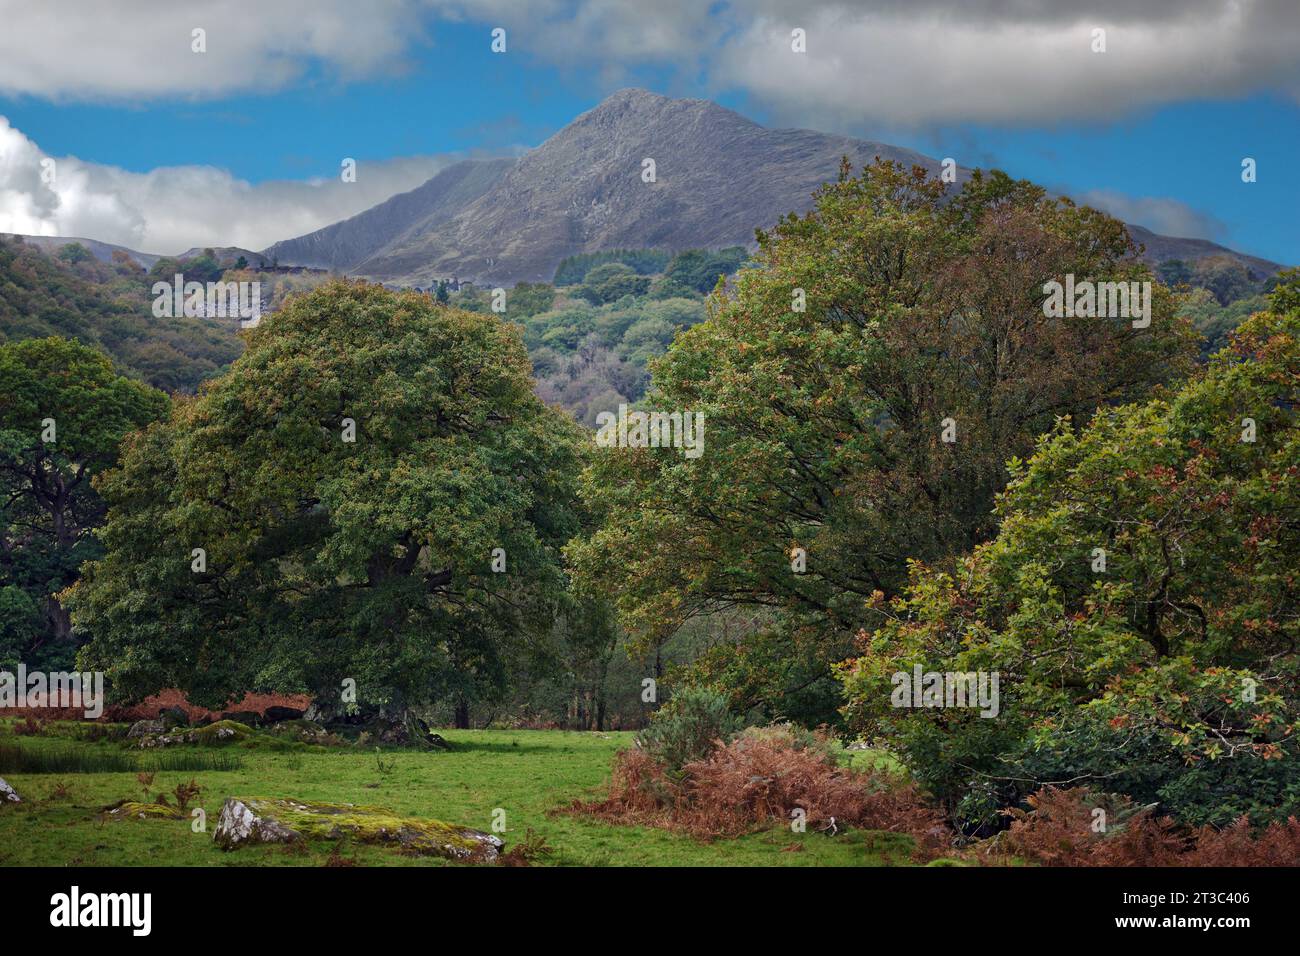 Llugwy Valley e River si trovano nel Parco Nazionale di Snowdonia nel Galles del Nord. Sullo sfondo si può vedere la montagna Moel Siabod. Foto Stock